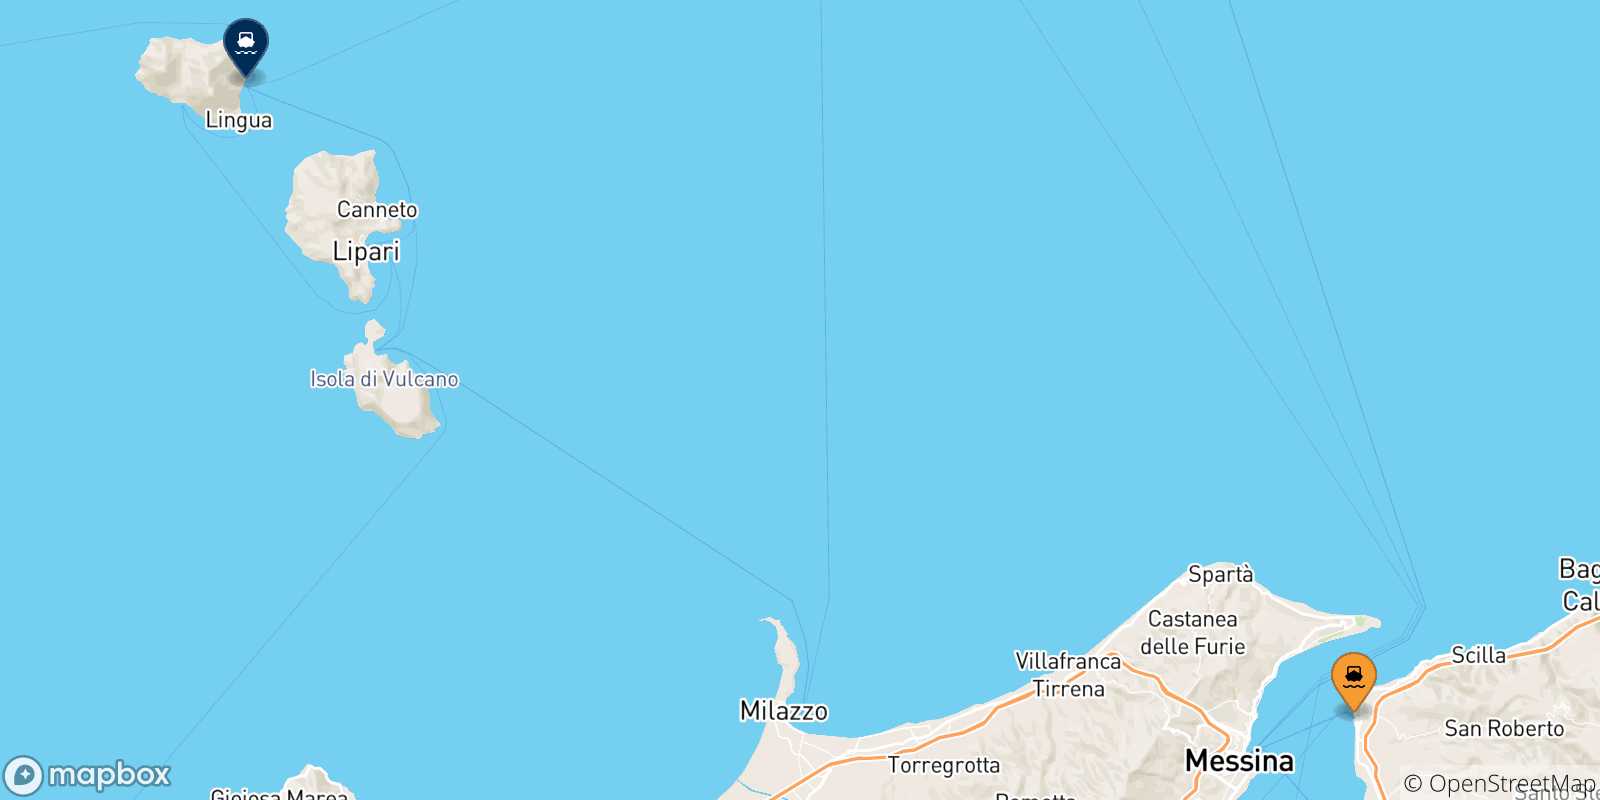 Mappa delle possibili rotte tra Reggio Calabria e le Isole Eolie